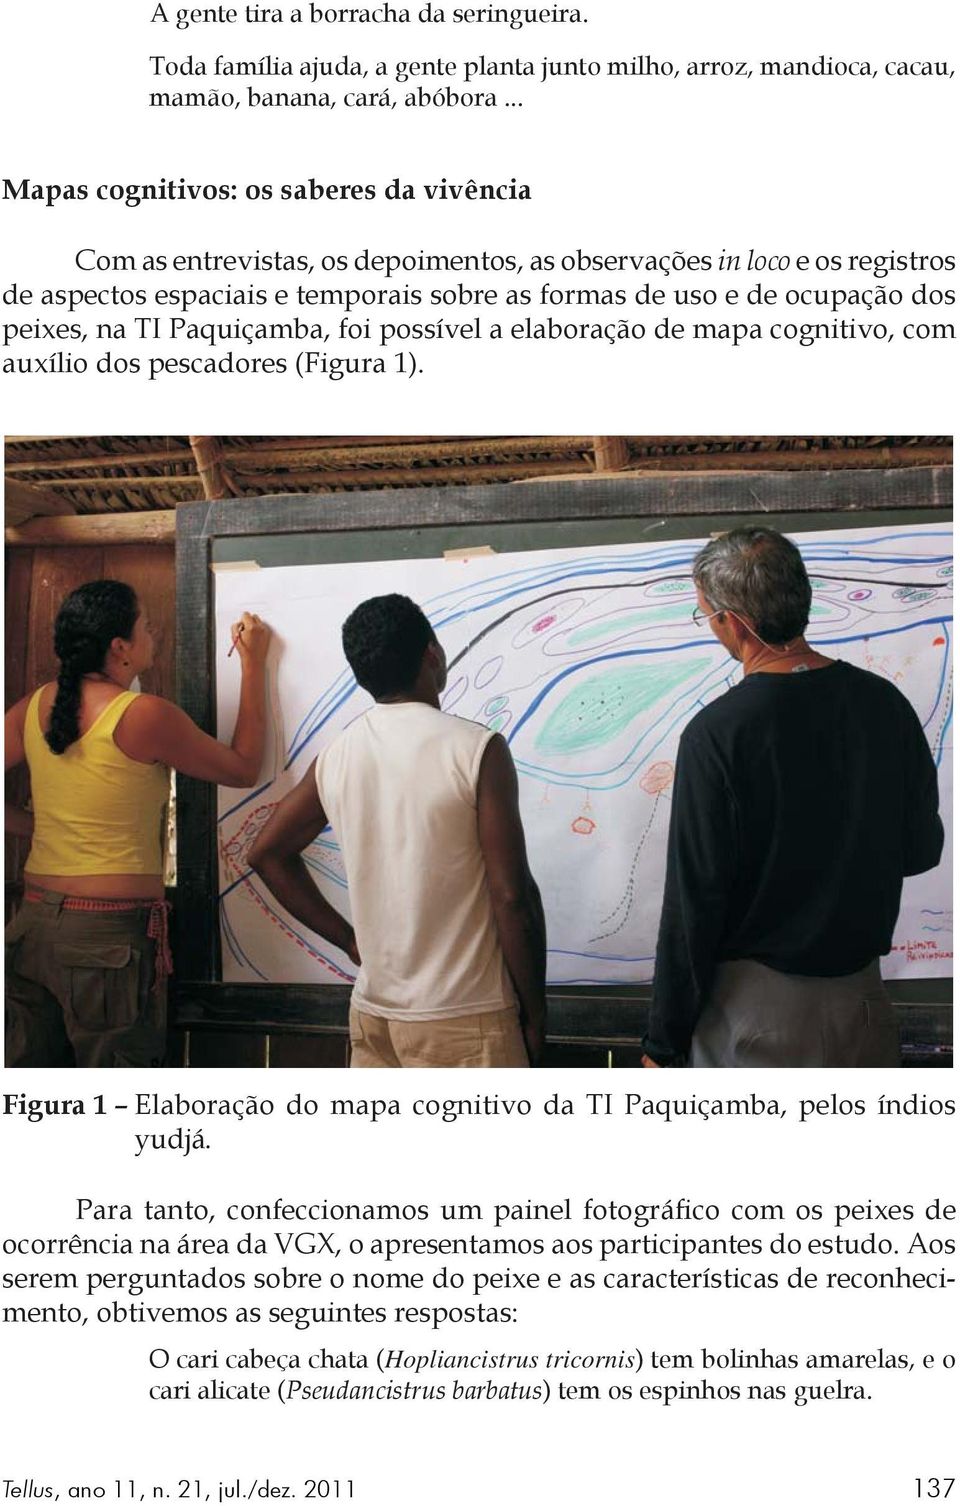 peixes, na TI Paquiçamba, foi possível a elaboração de mapa cognitivo, com auxílio dos pescadores (Figura 1). Figura 1 Elaboração do mapa cognitivo da TI Paquiçamba, pelos índios yudjá.